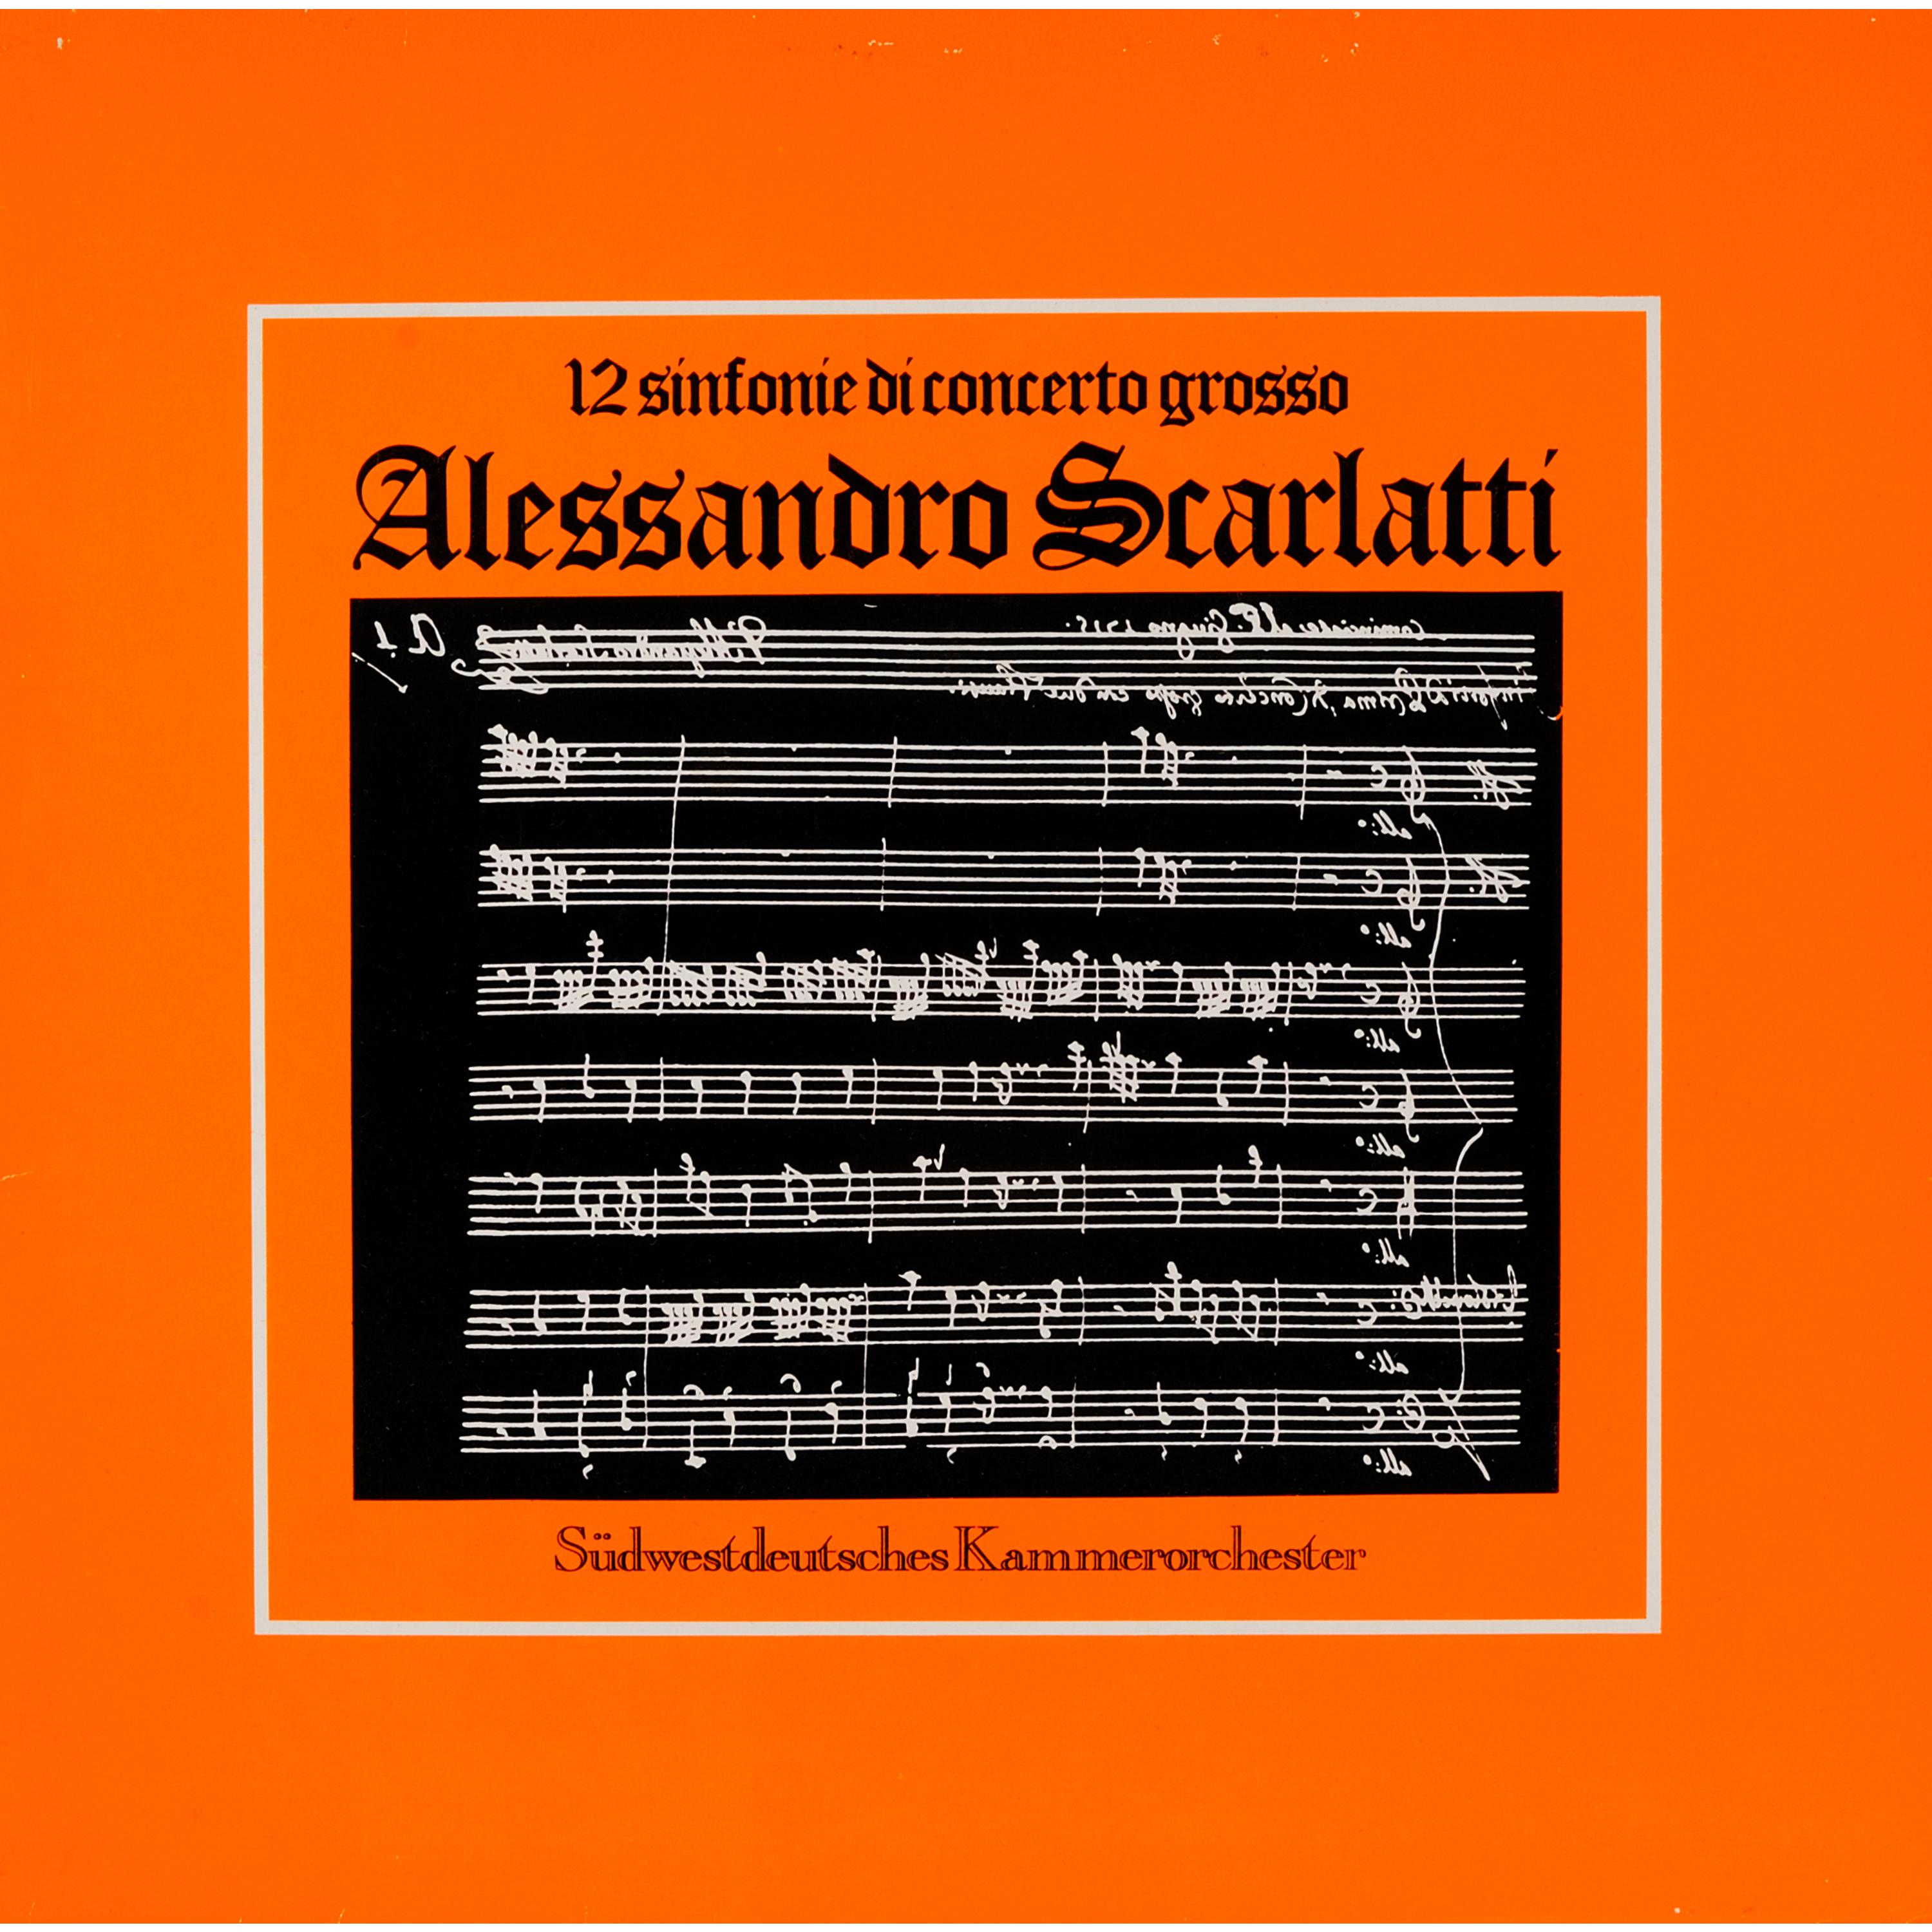 Scarlatti: Sinfonie di concerto grosso, Vol. 2